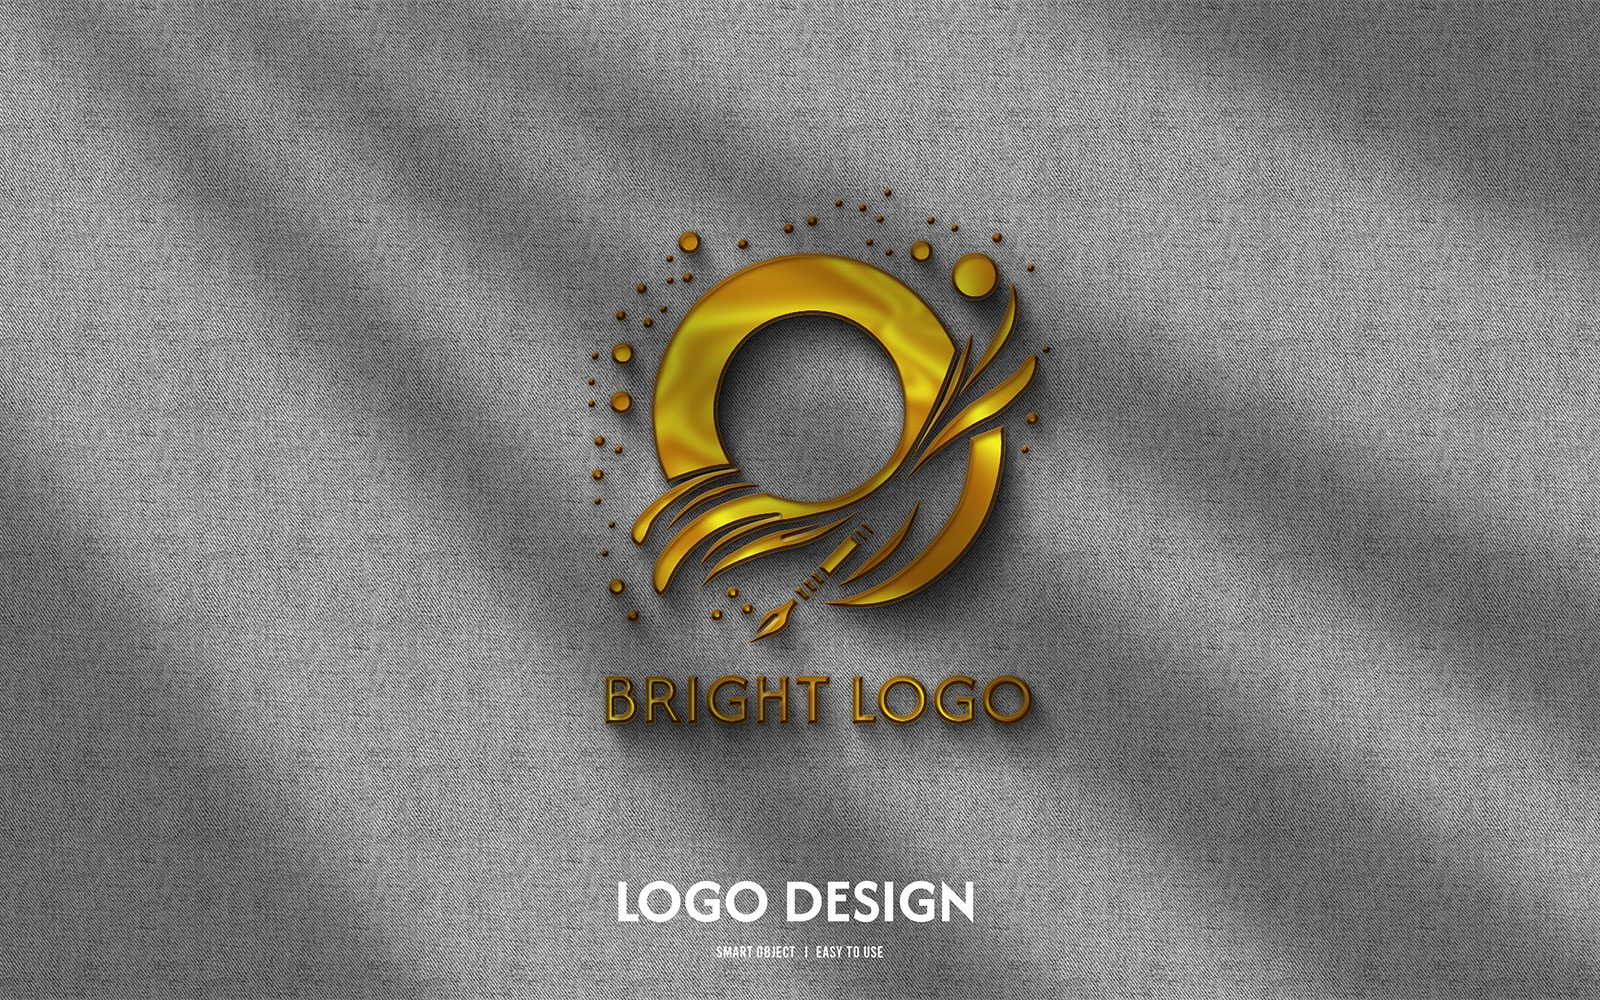 File:Bright's logo.jpg - Wikipedia